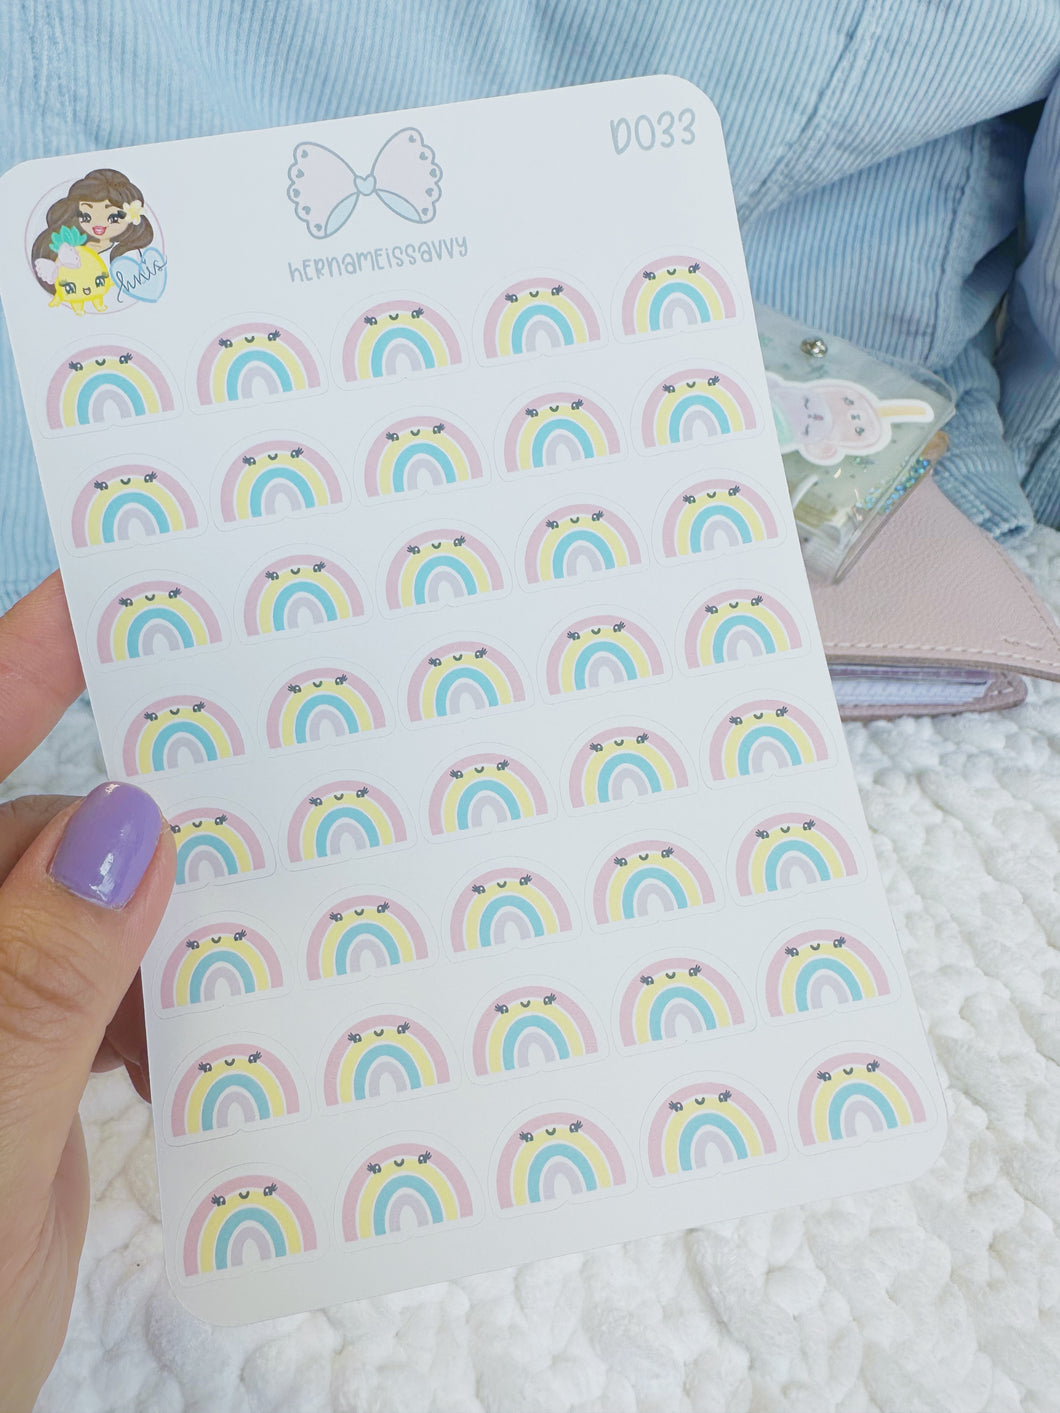 D033 - Kawaii Rainbows Sticker Sheet